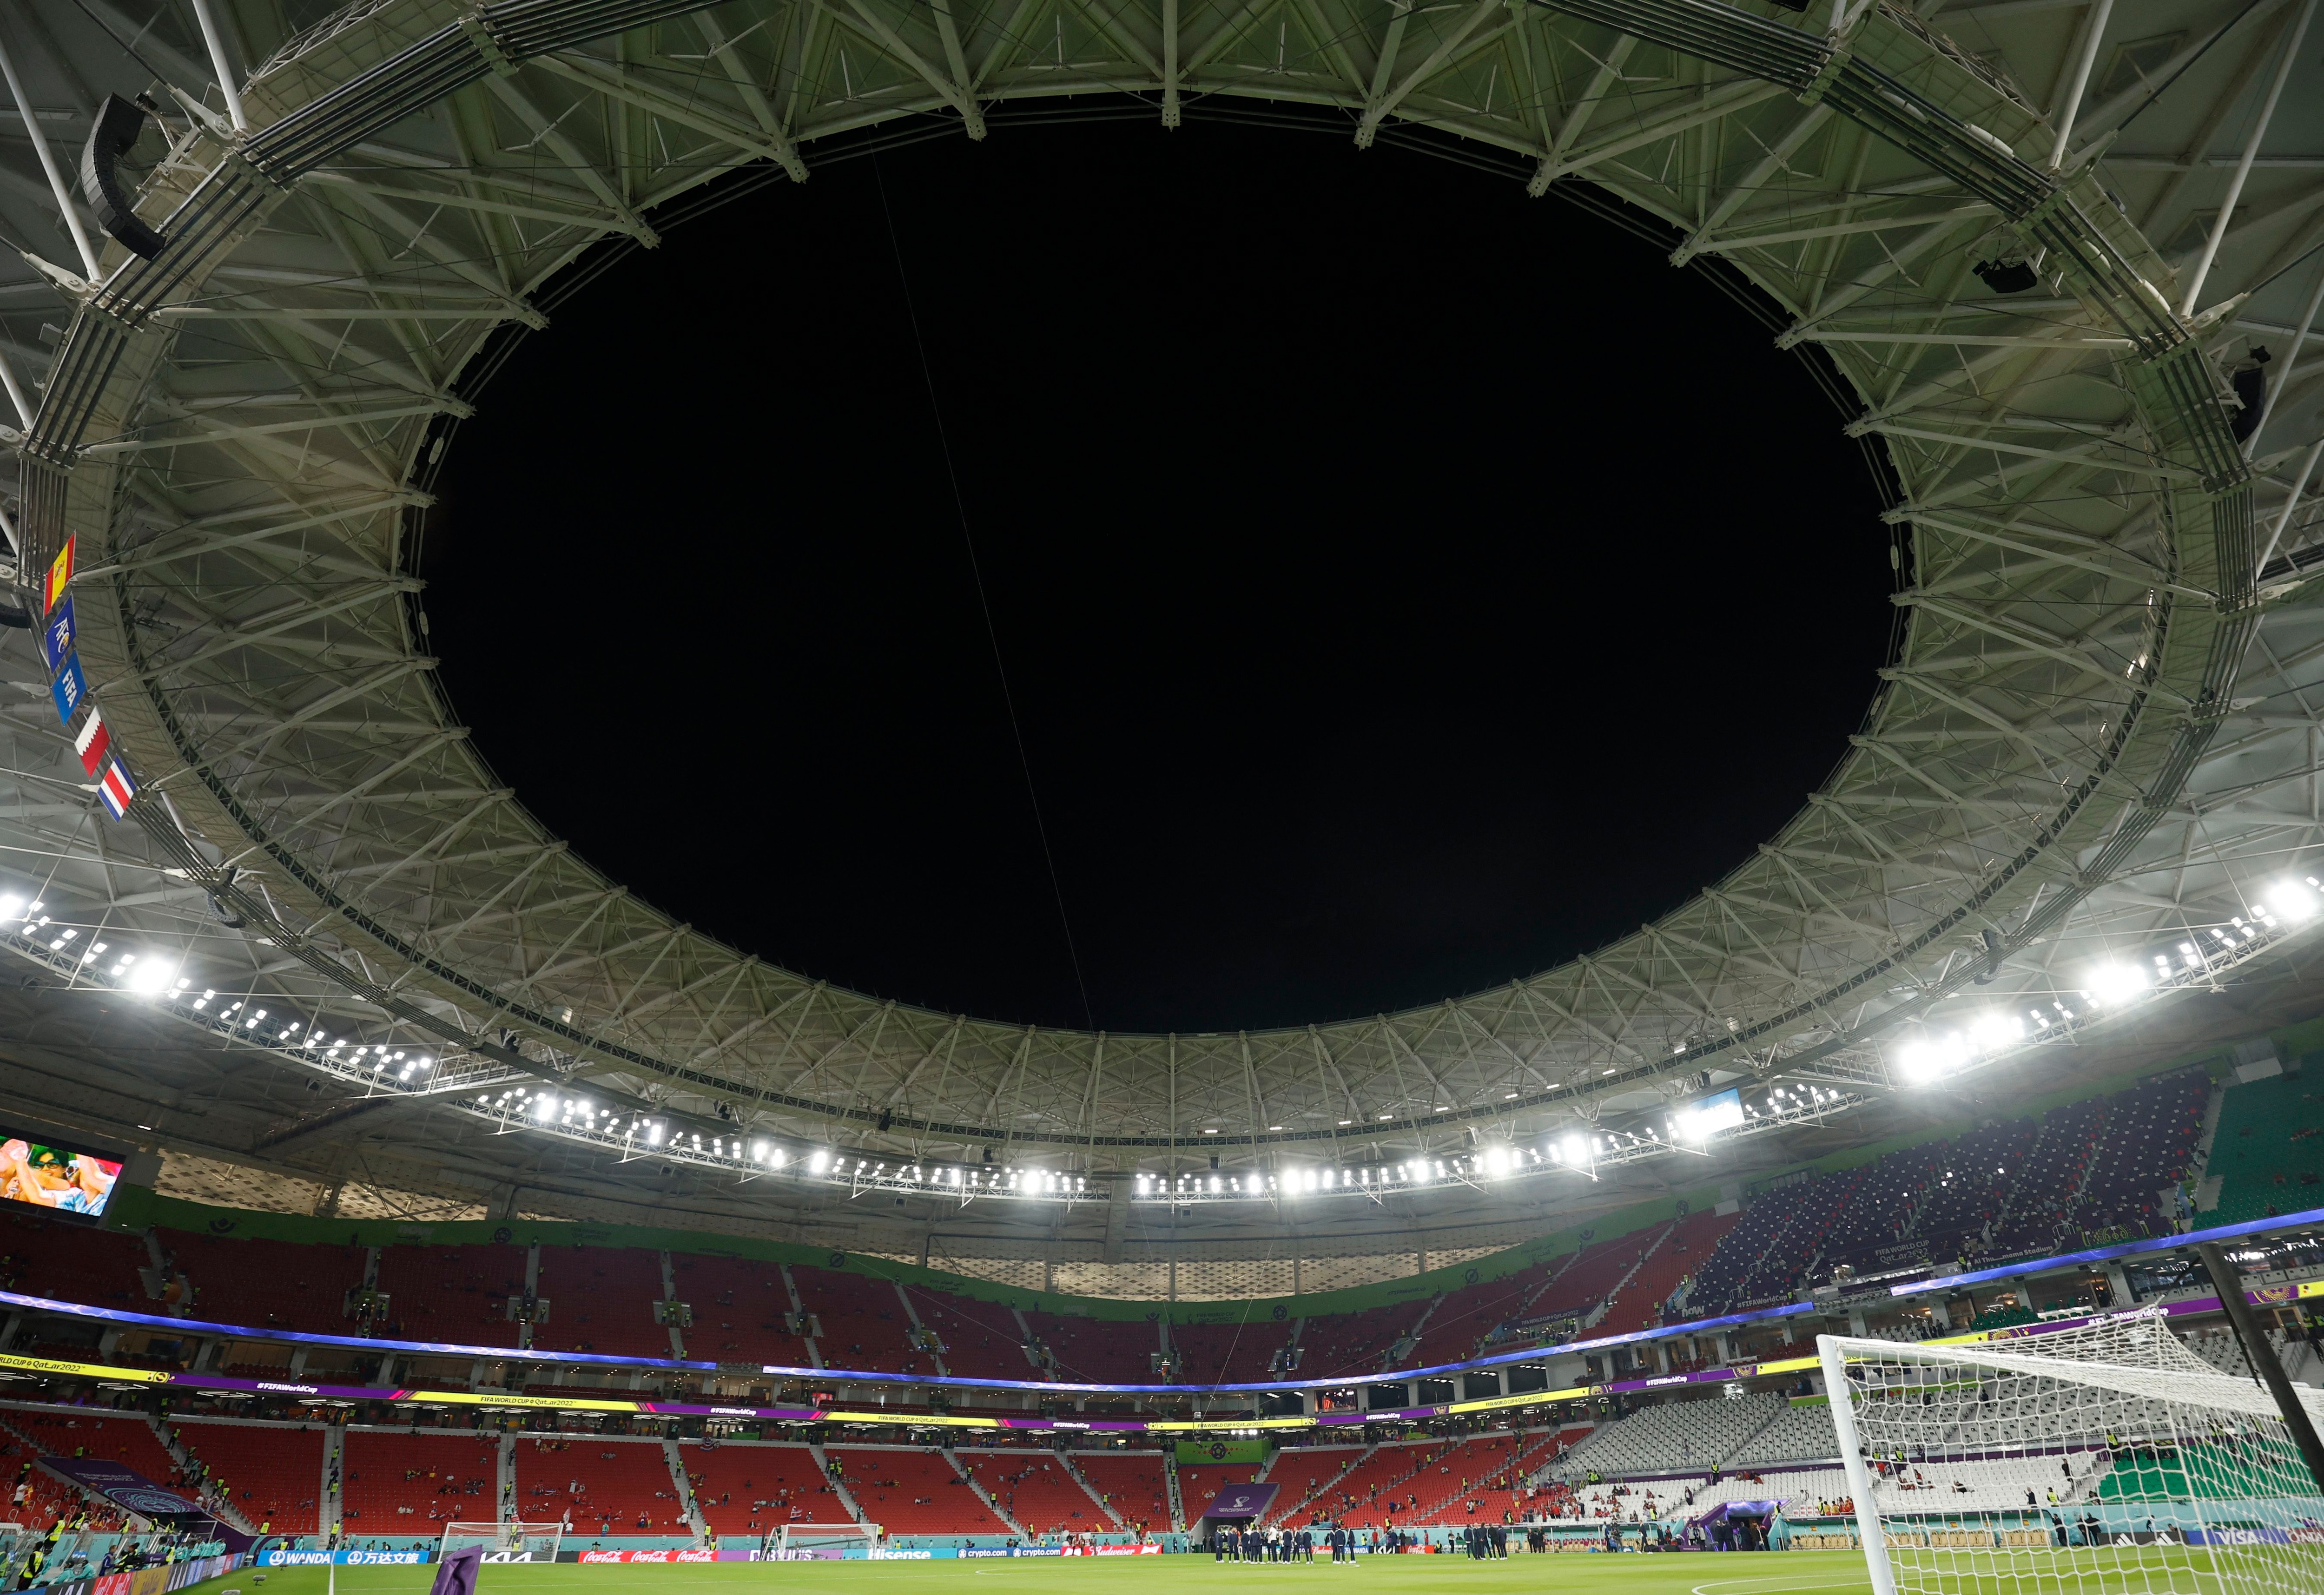 Así luce el estadio Al Thumama de la ciudad de Doha. Estamos a minutos de que empiece el juego entre España y Costa Rica por el grupo E de la Copa Mundial de Qatar 2022. REUTERS/Albert Gea